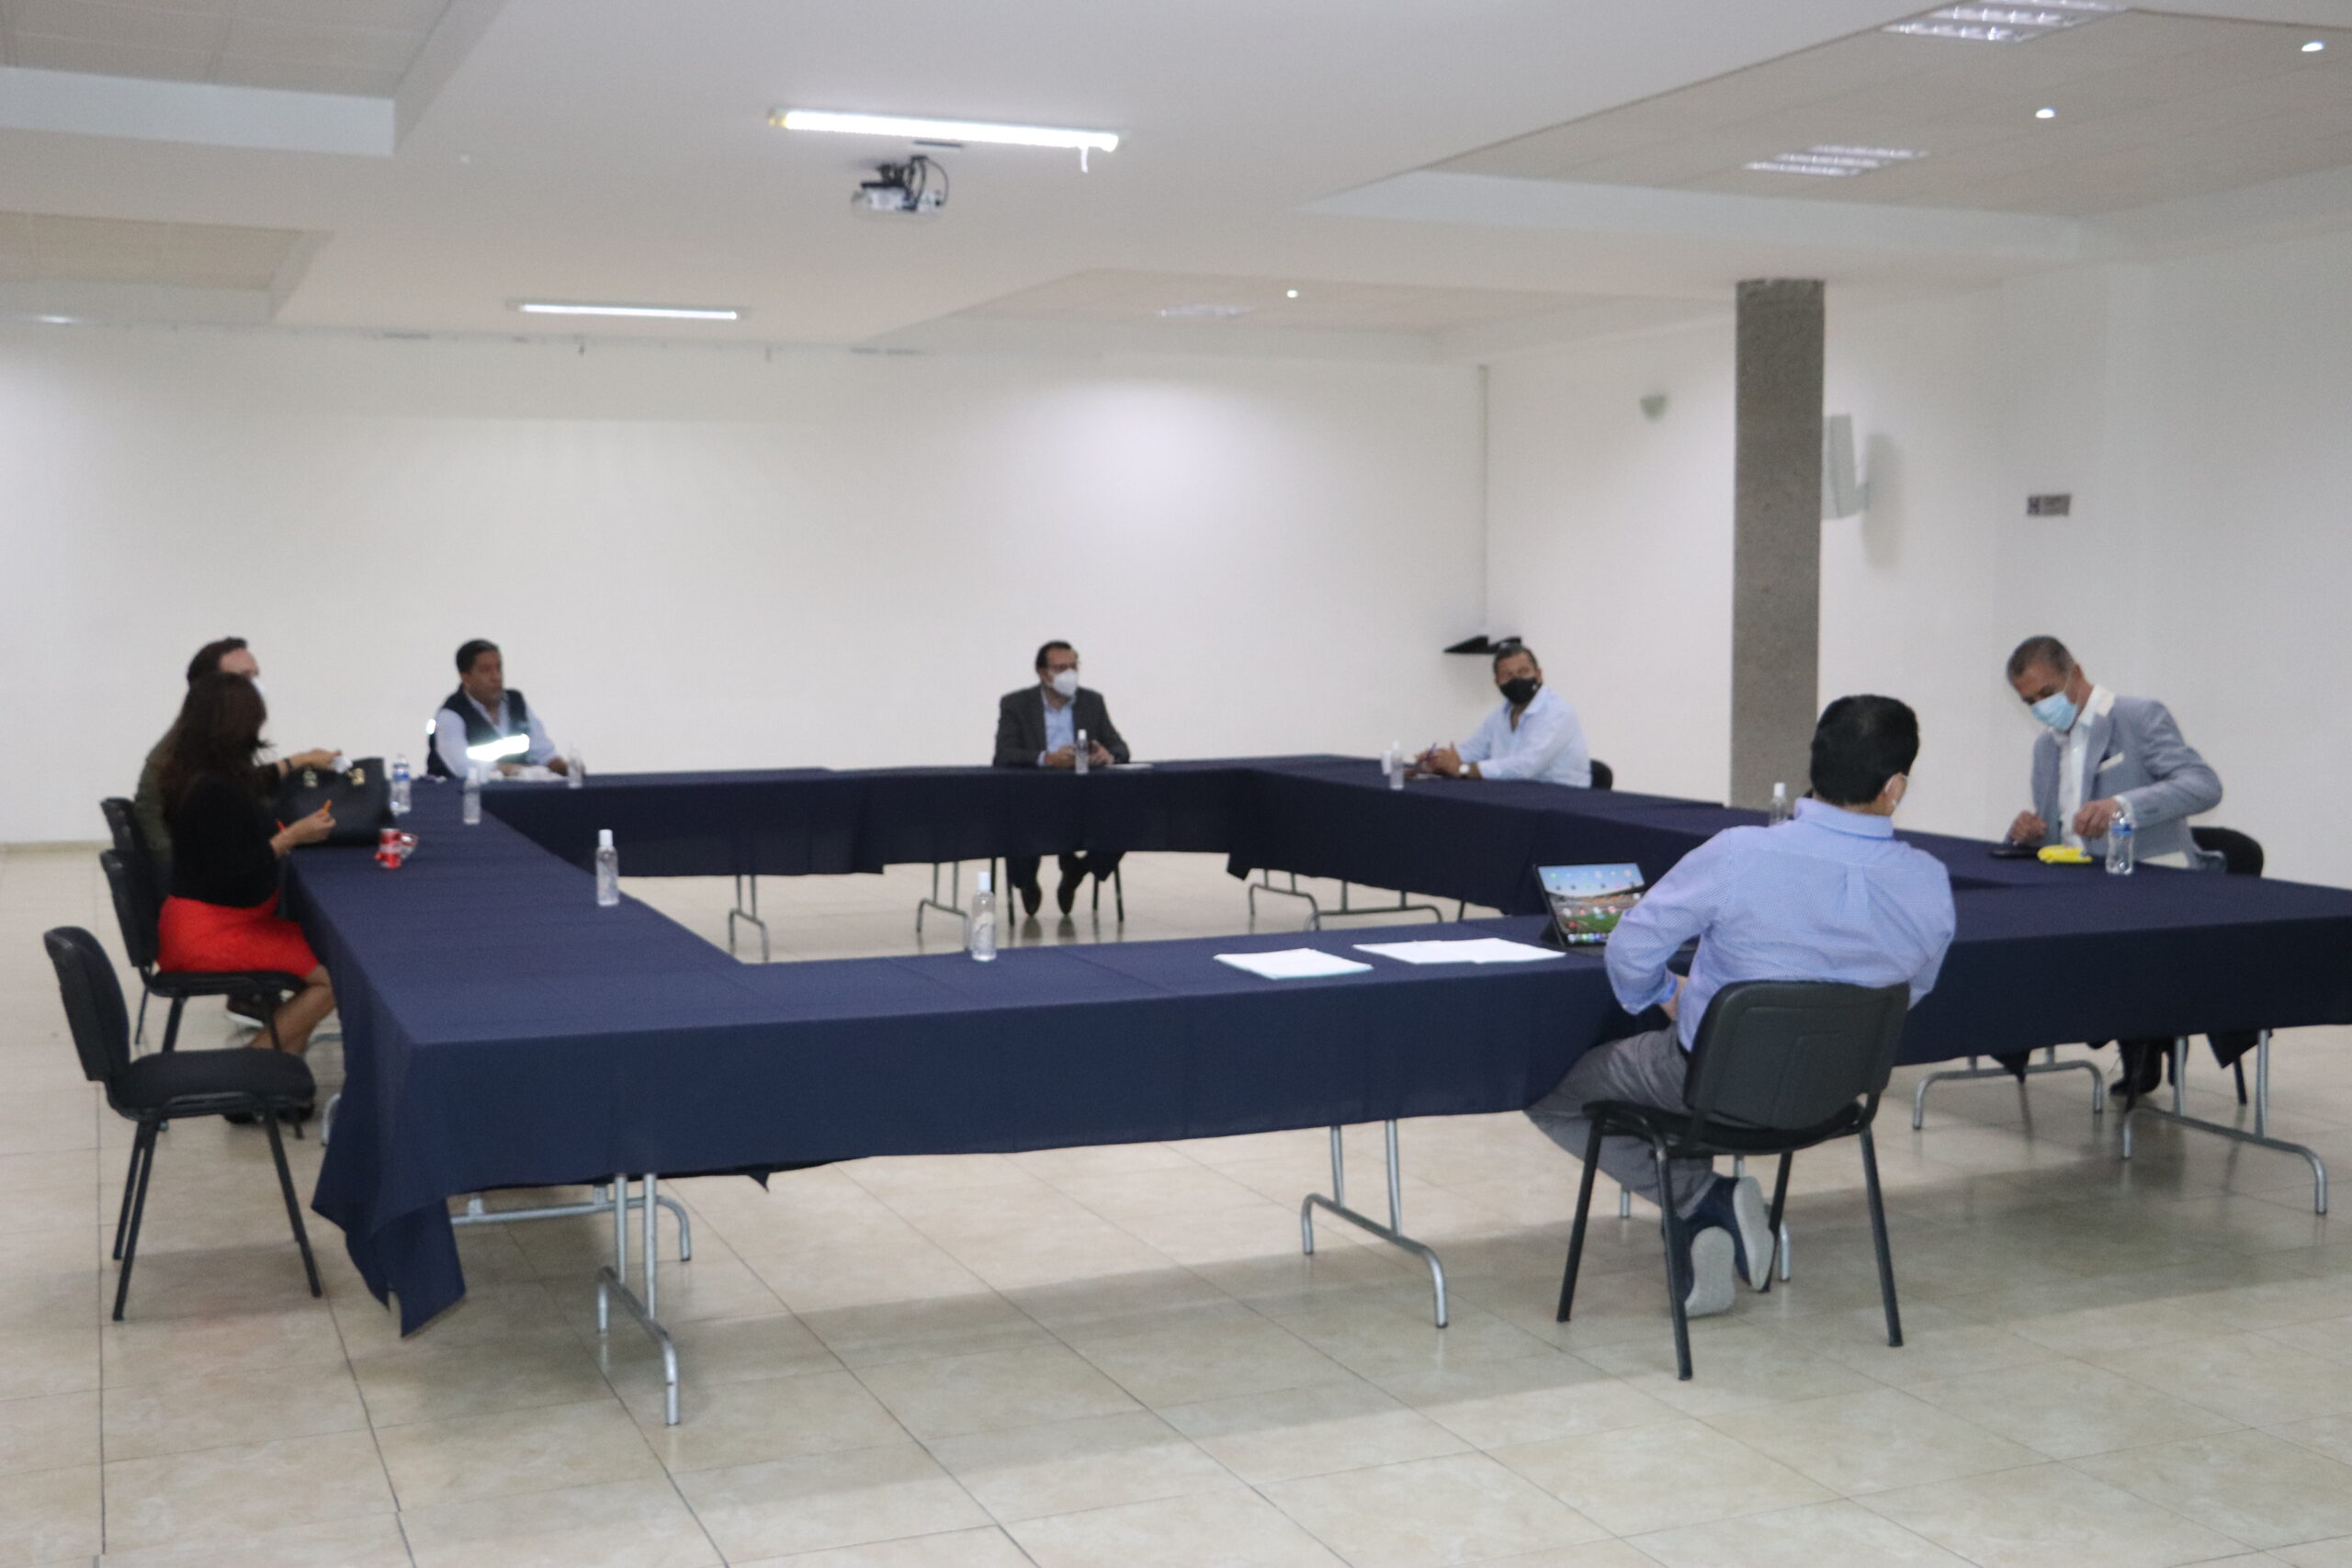  Acuerdos y desacuerdos en primera reunión de aspirantes a candidatura del PAN a la gubernatura